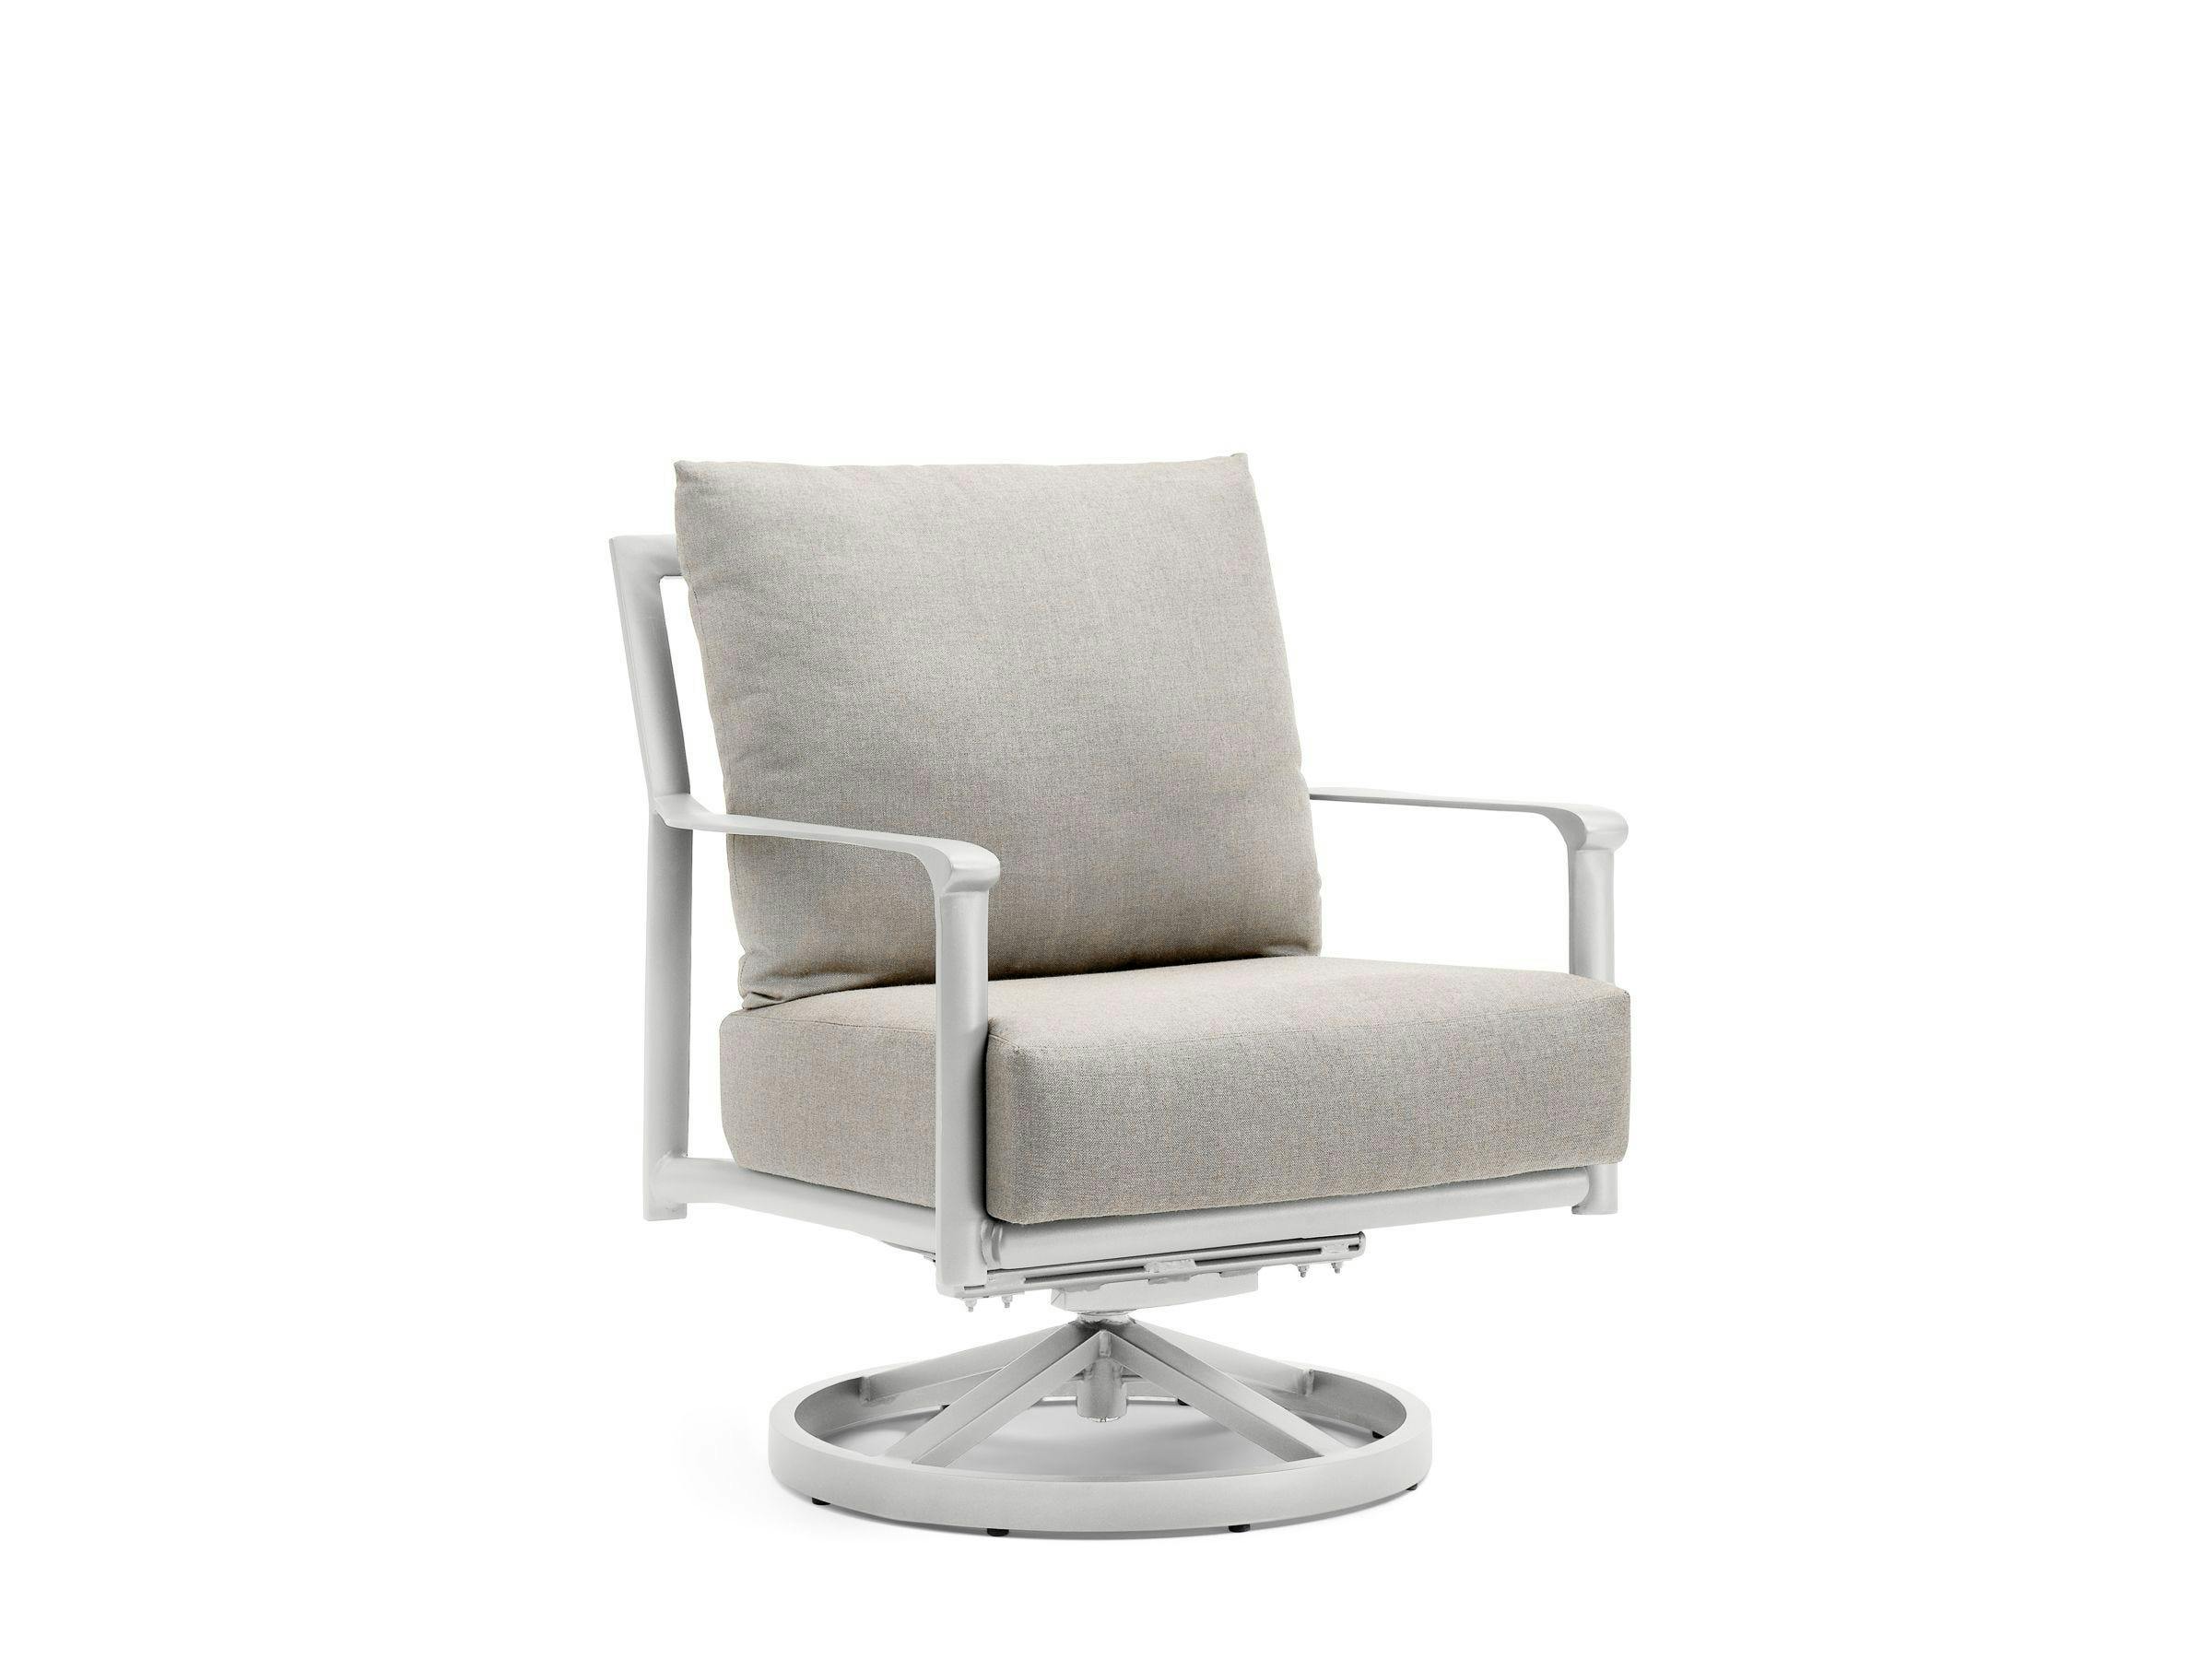 Aspen Cushion Swivel Rocker Lounge Chair